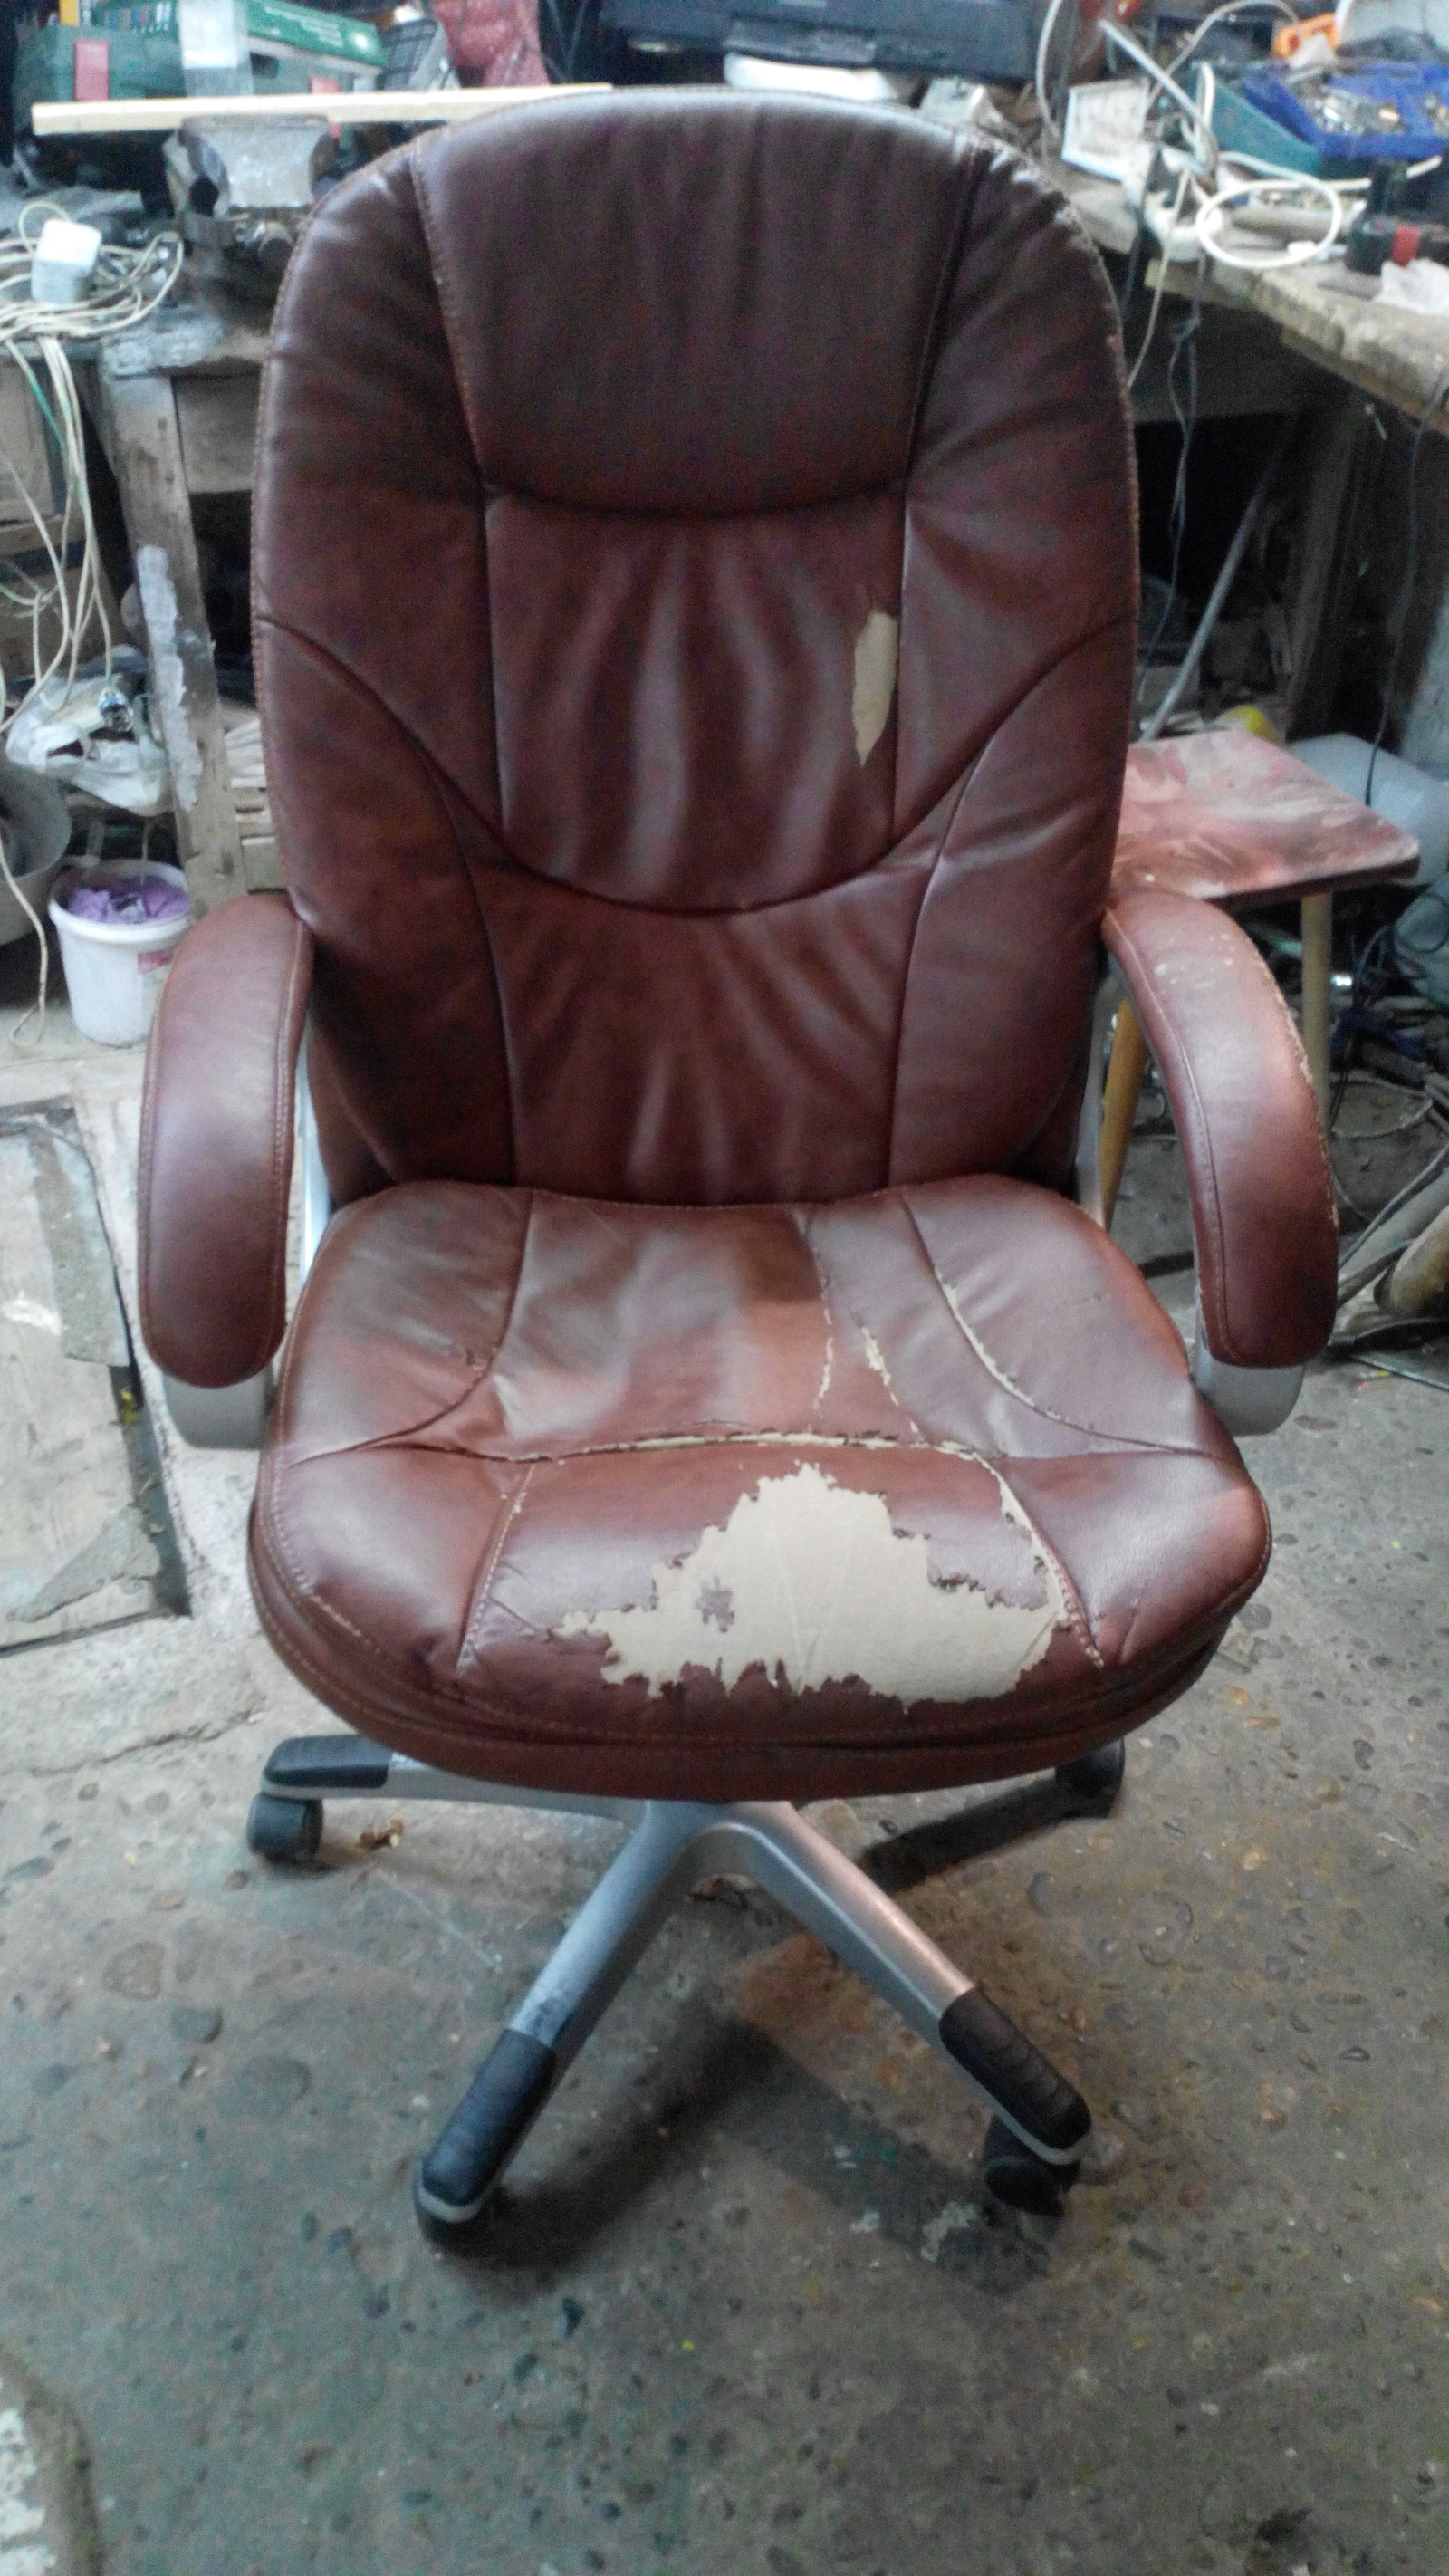 Перетяжка компьютерного кресла в СПб на дому и в мастерской, недорого. Доступные цены